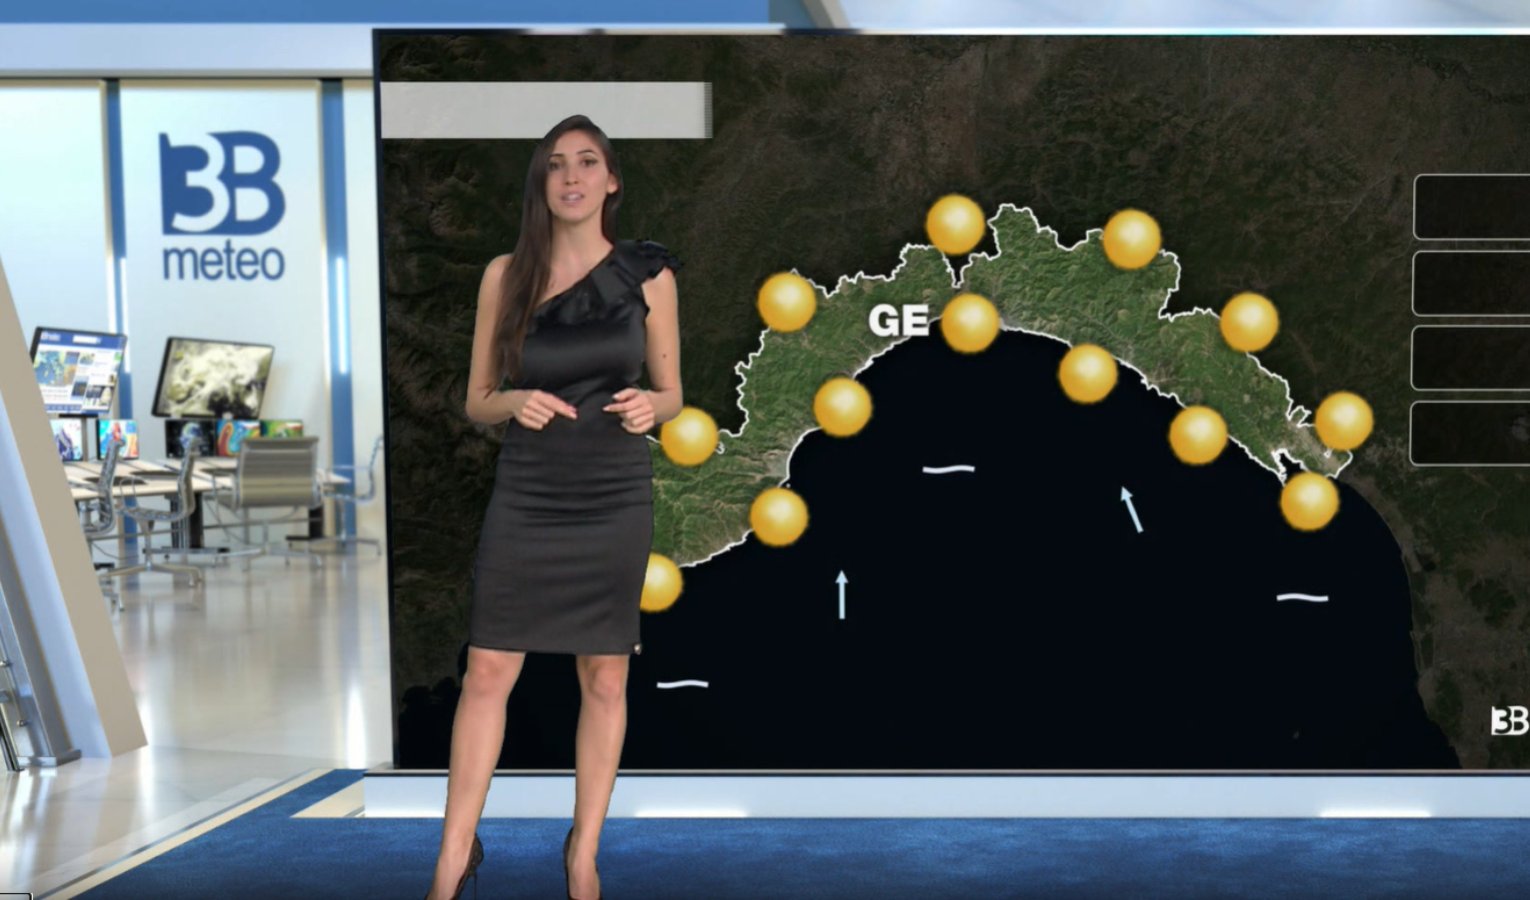 Meteo in Liguria: le previsioni per il 25 aprile